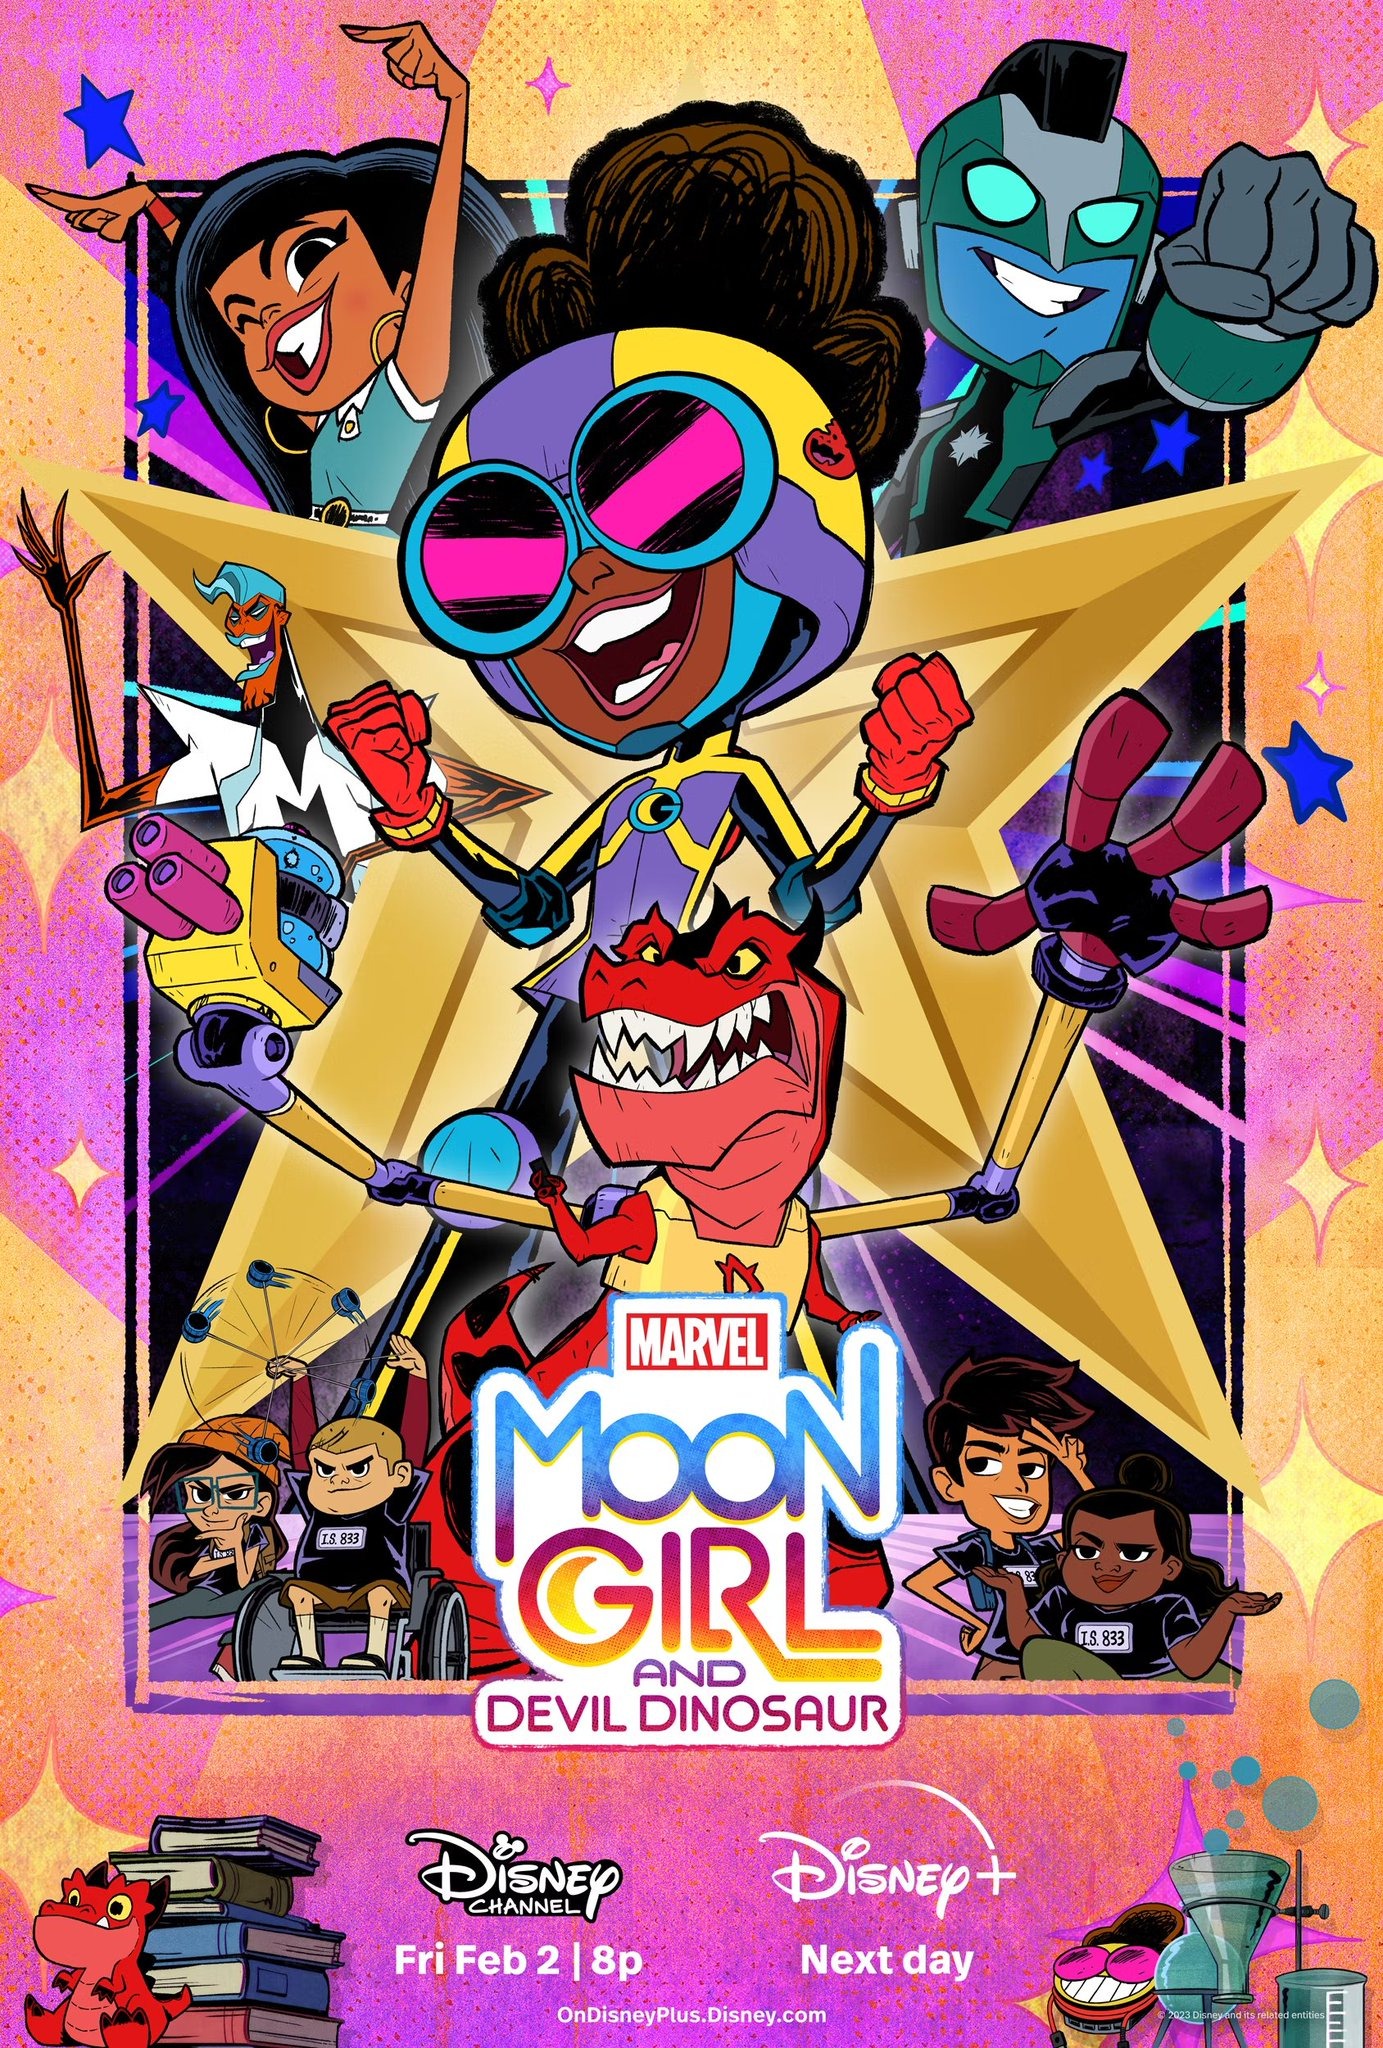 Mega Sized TV Poster Image for Marvel's Moon Girl and Devil Dinosaur (#7 of 7)